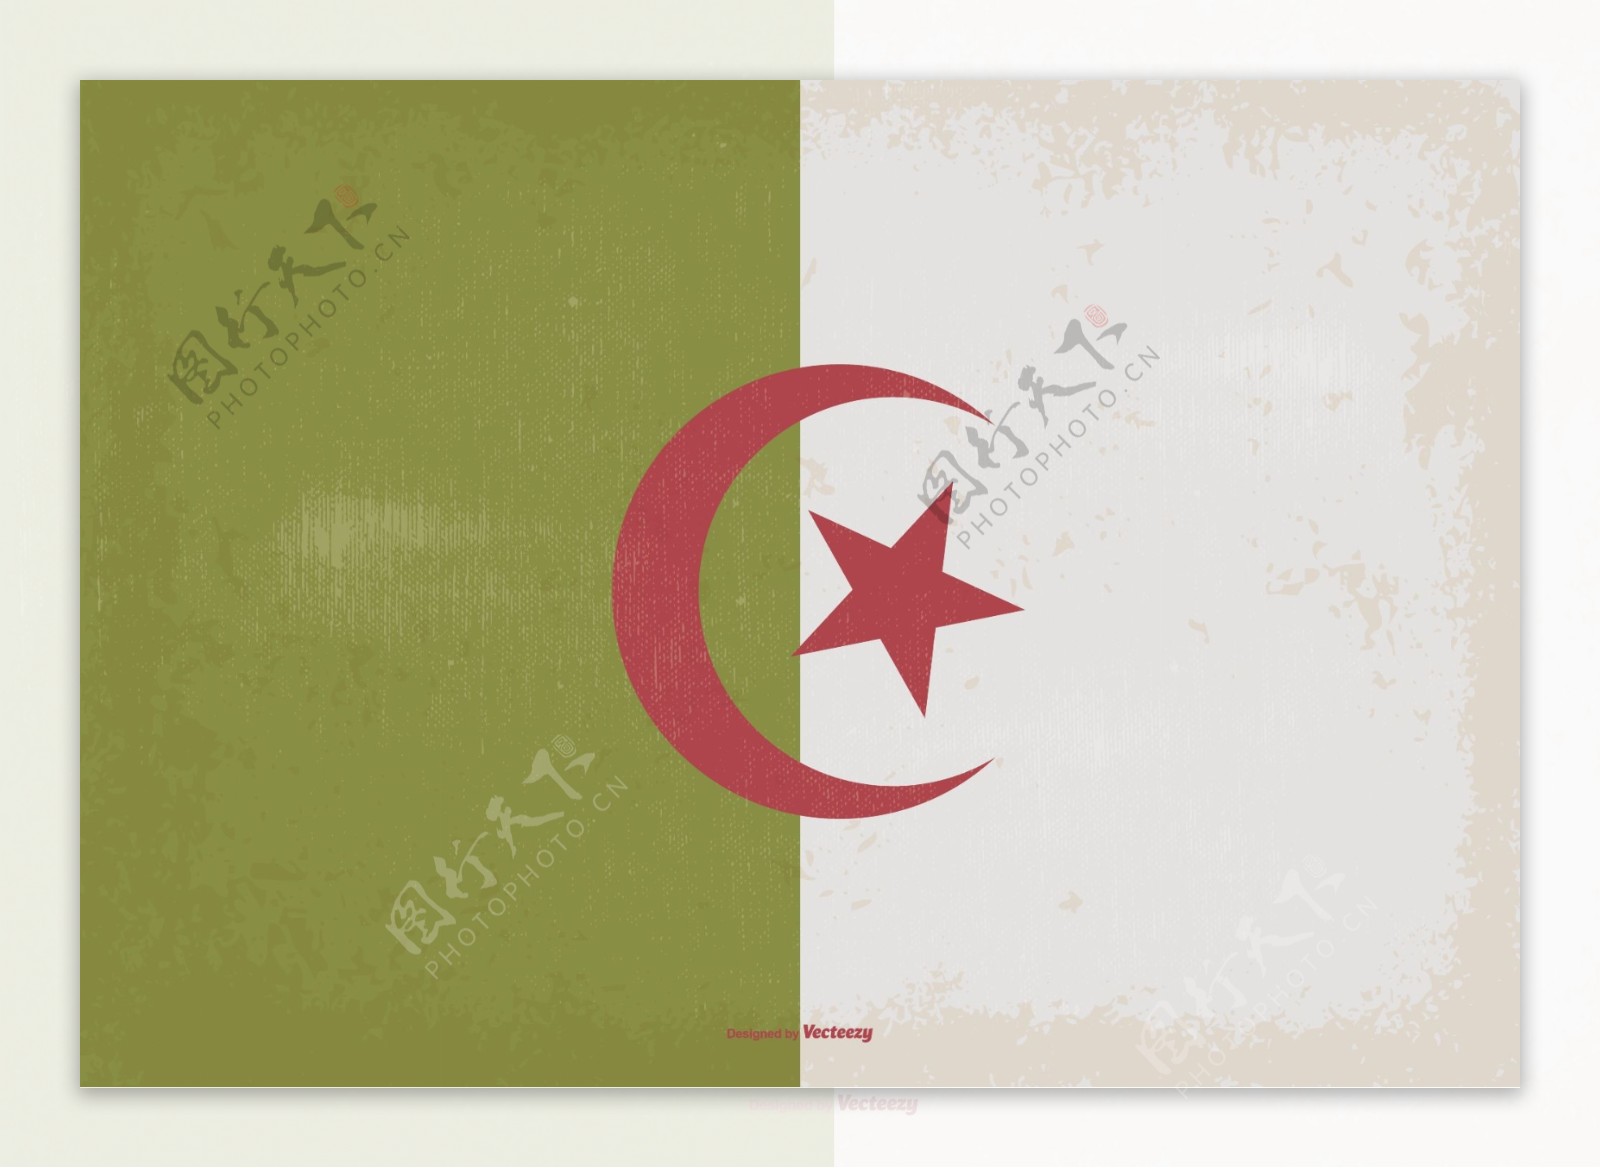 阿尔及利亚老式国旗